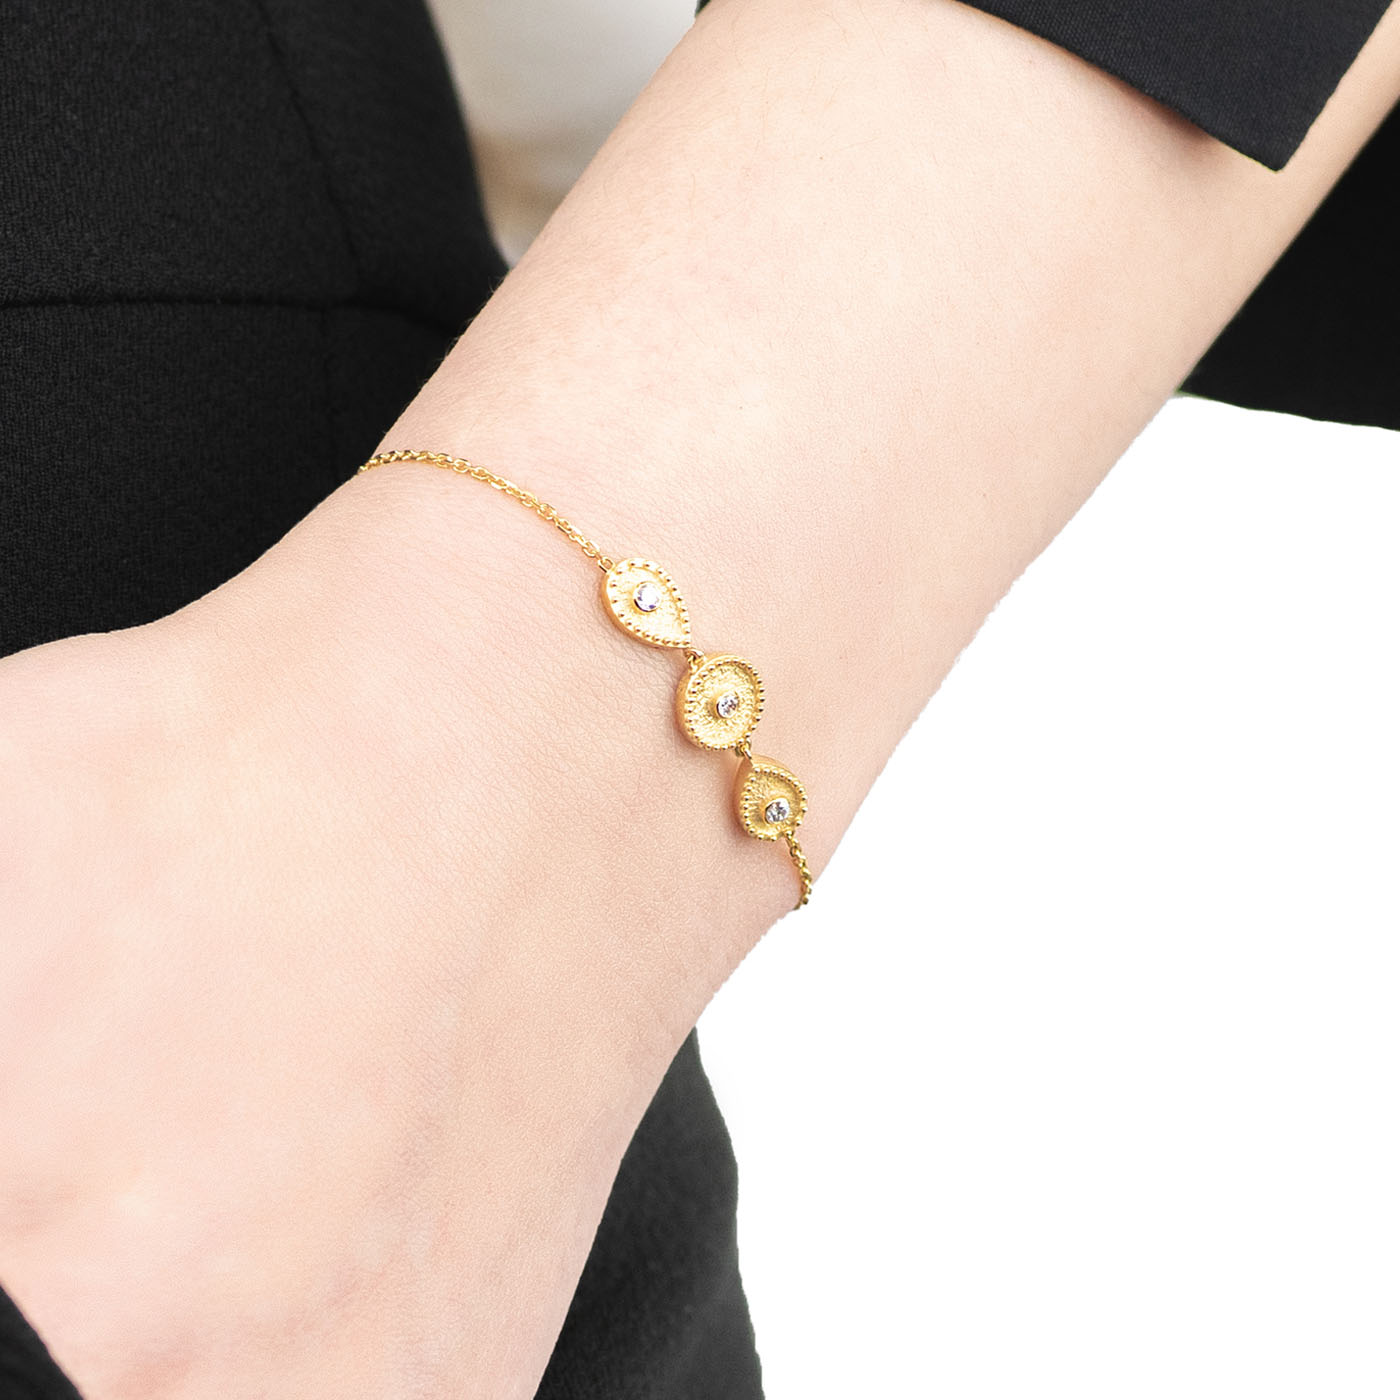 Gold geometric bracelet with diamonds